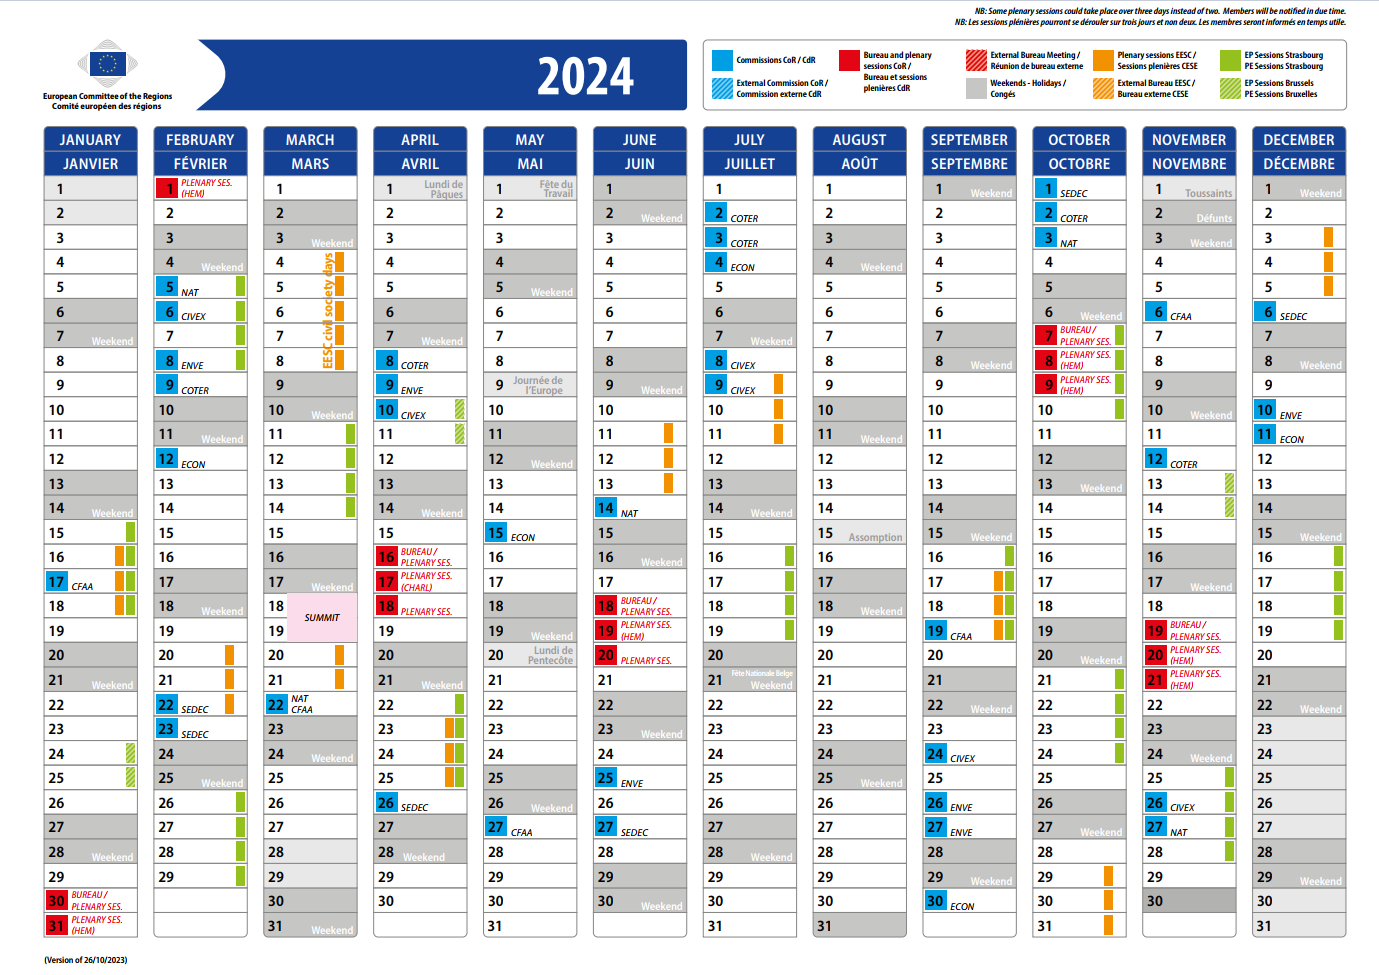 Kalender von 2024 mit den Terminen des Ausschuss der Regionen